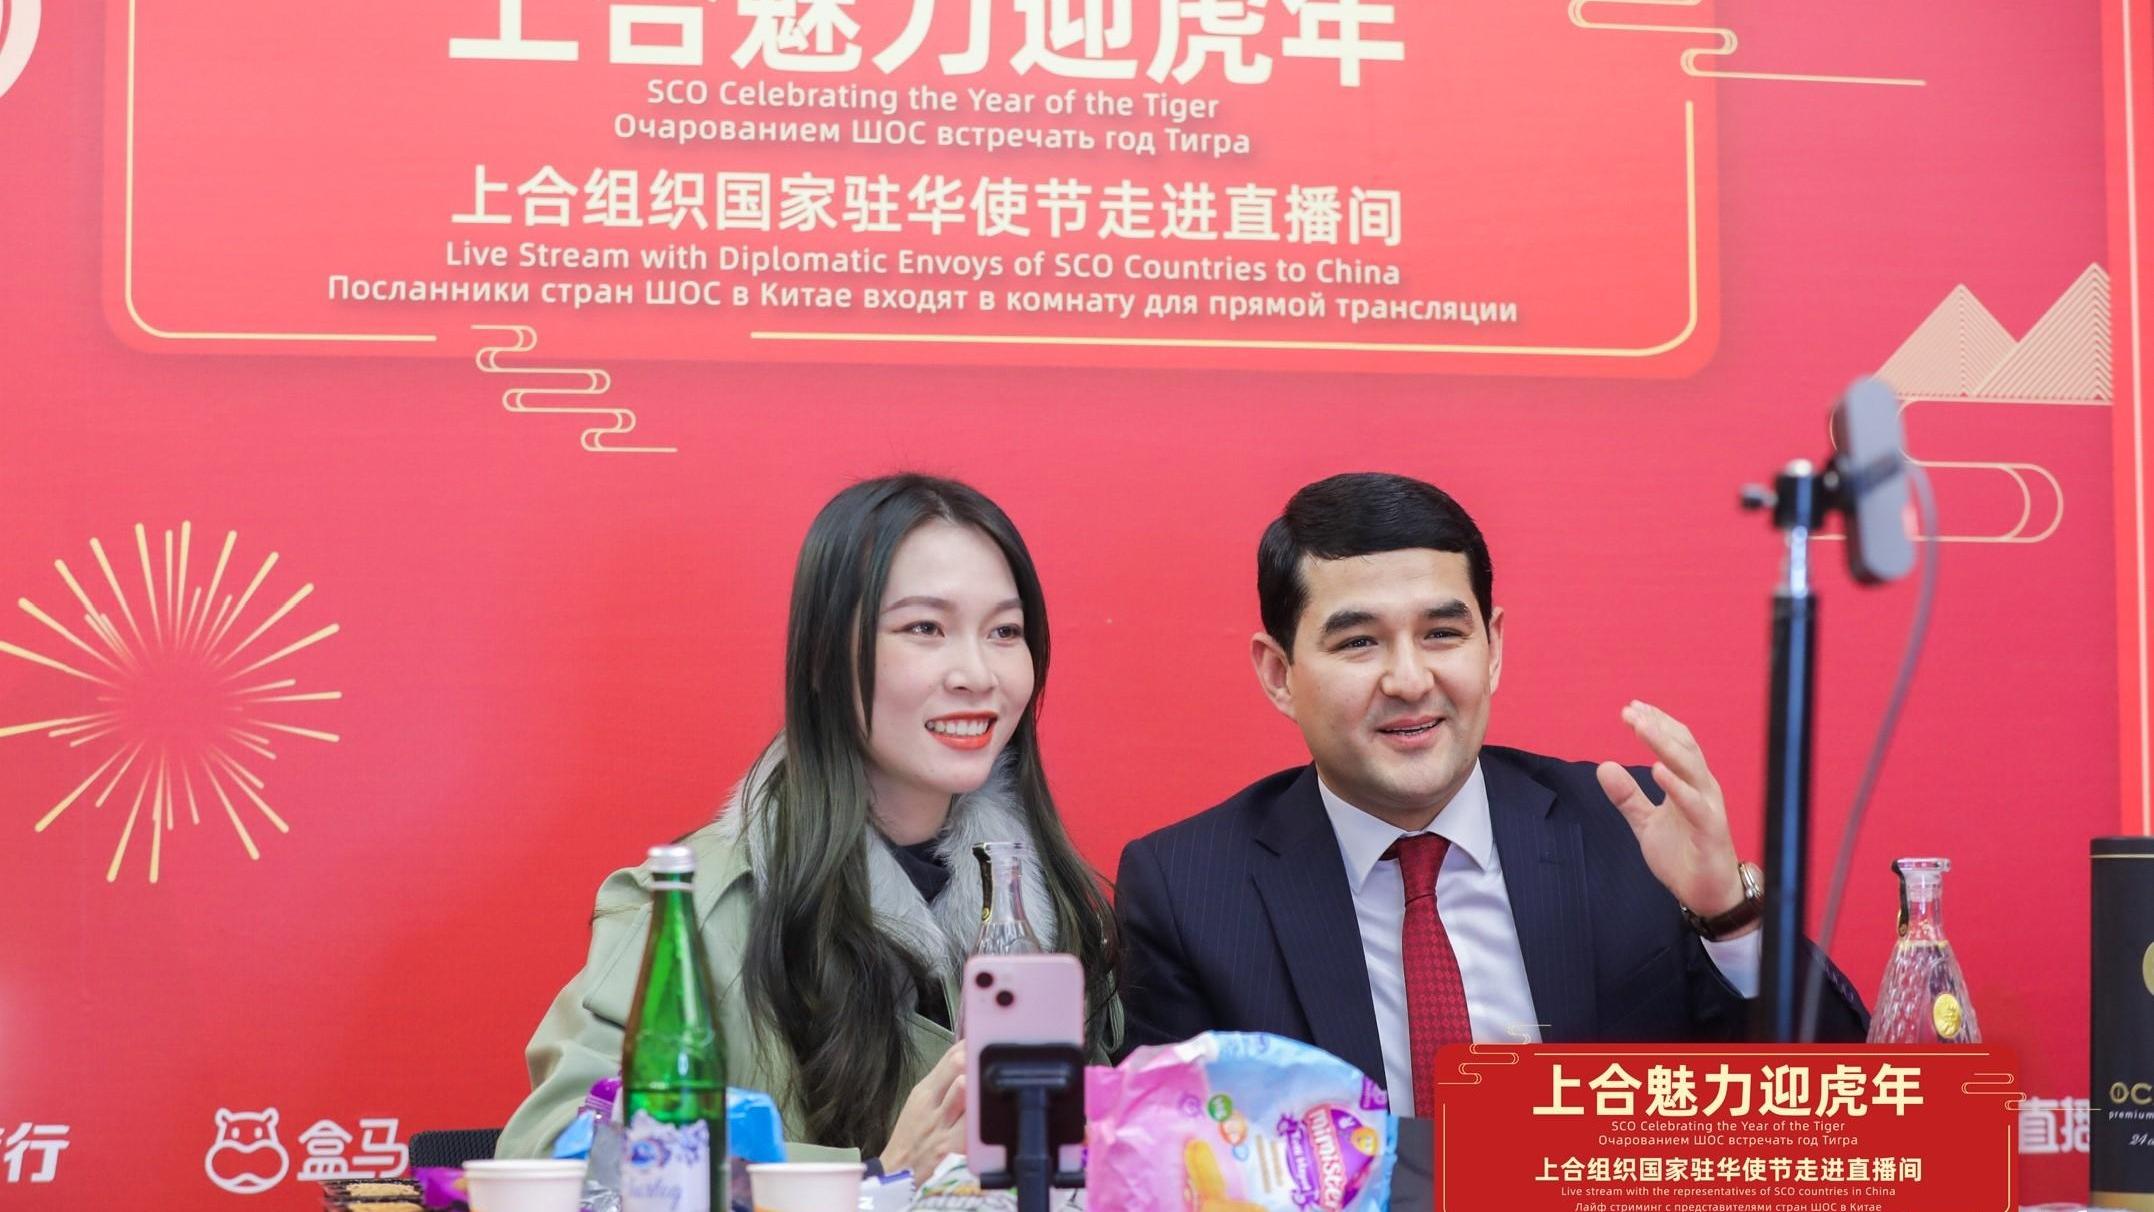 جشنواره خرید آنلاین چین و سازمان همکاری شانگهای نزدیک به 16 میلیون دلار فروش داردا